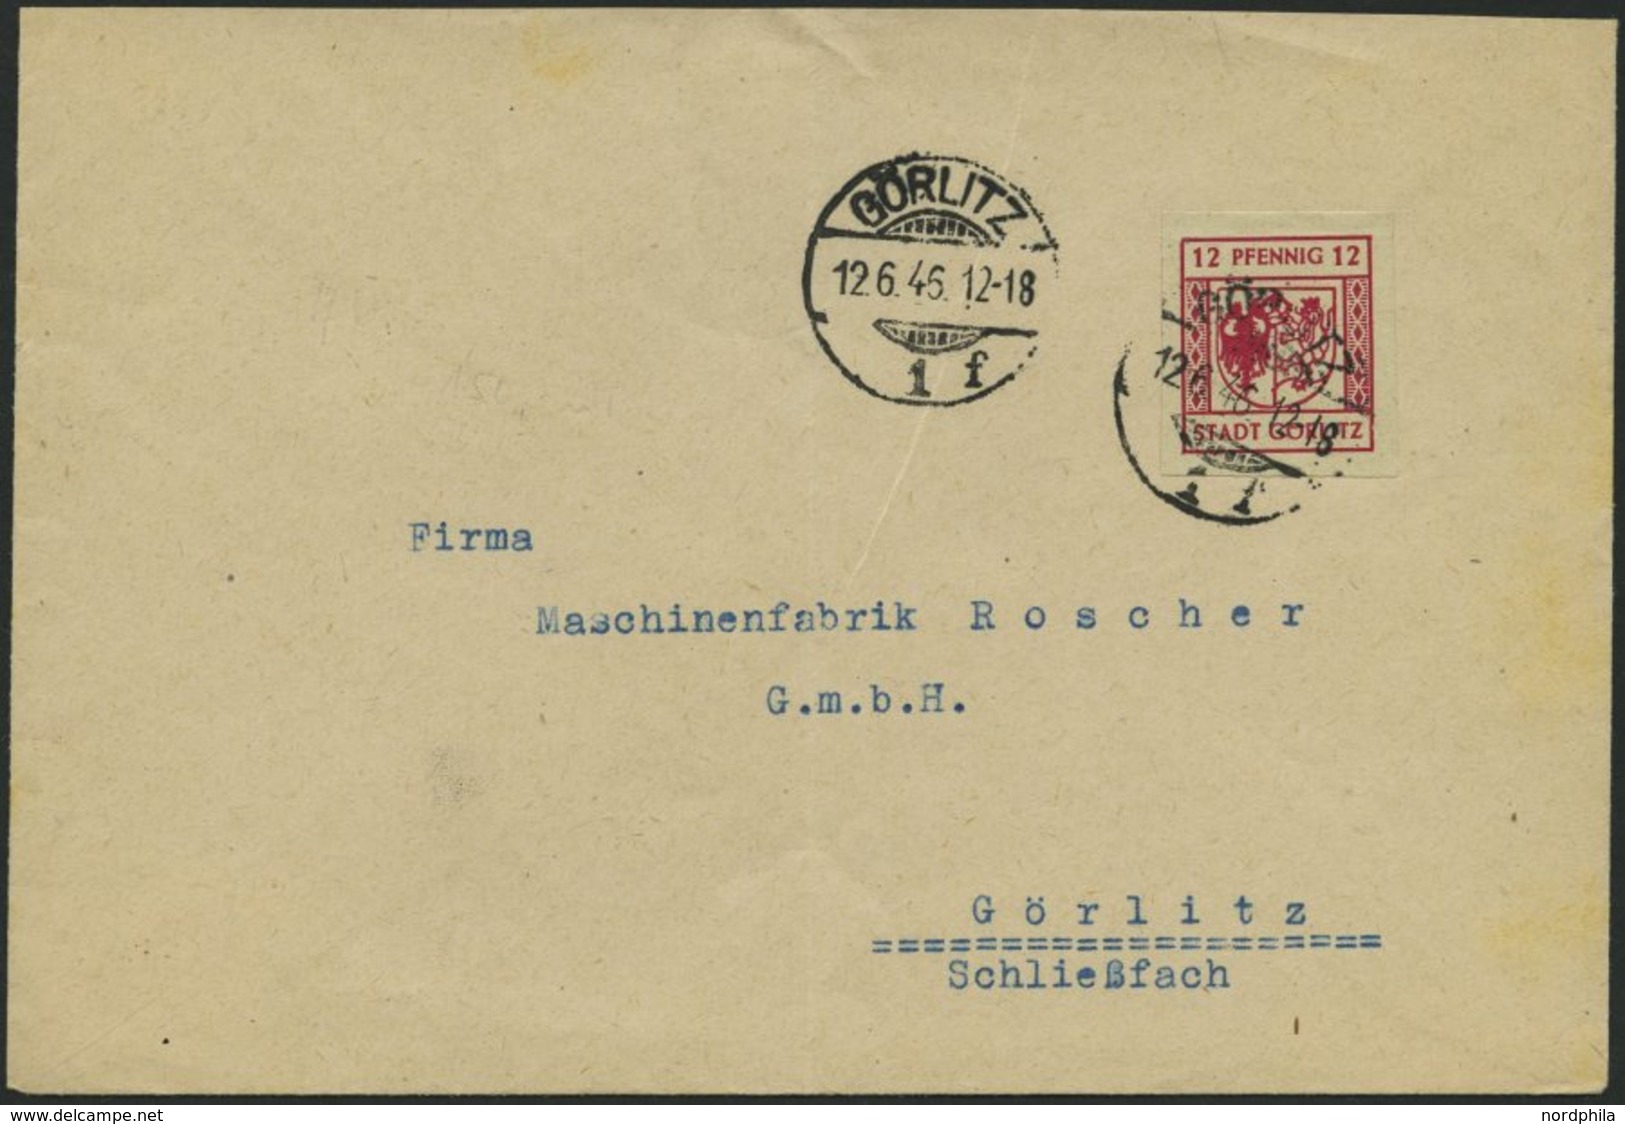 GÖRLITZ 4aU BRIEF, 1946, 12 Pf. Lilarot, Graues Papier, Ungezähnt, Prachtbrief - Postes Privées & Locales